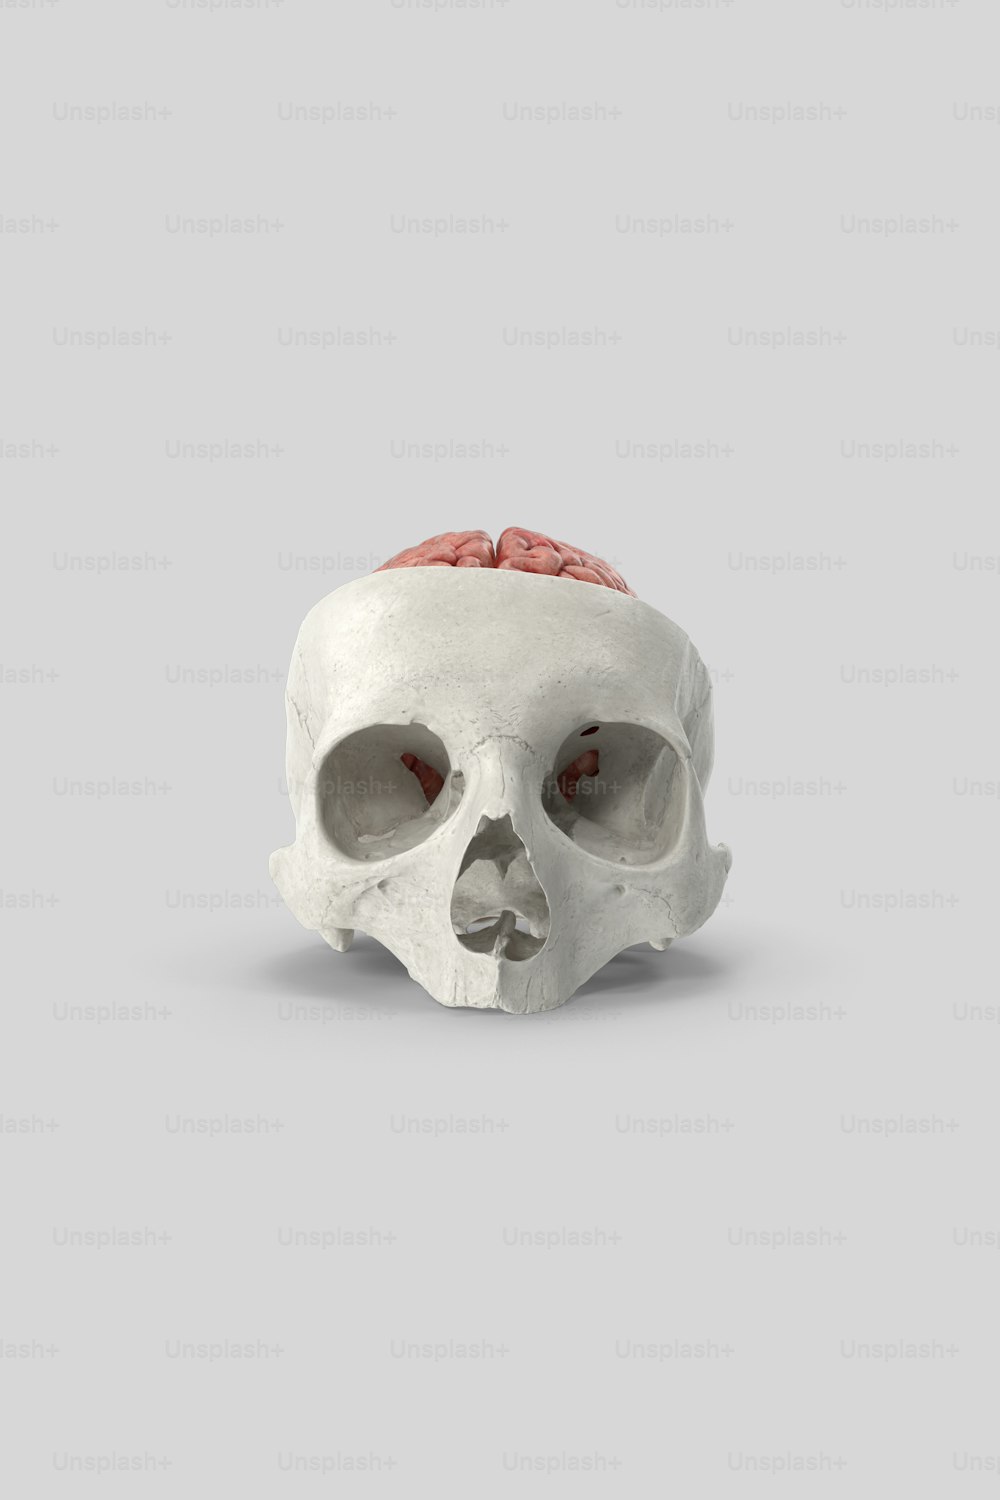 그 위에 빨간 뇌가 있는 하얀 두개골